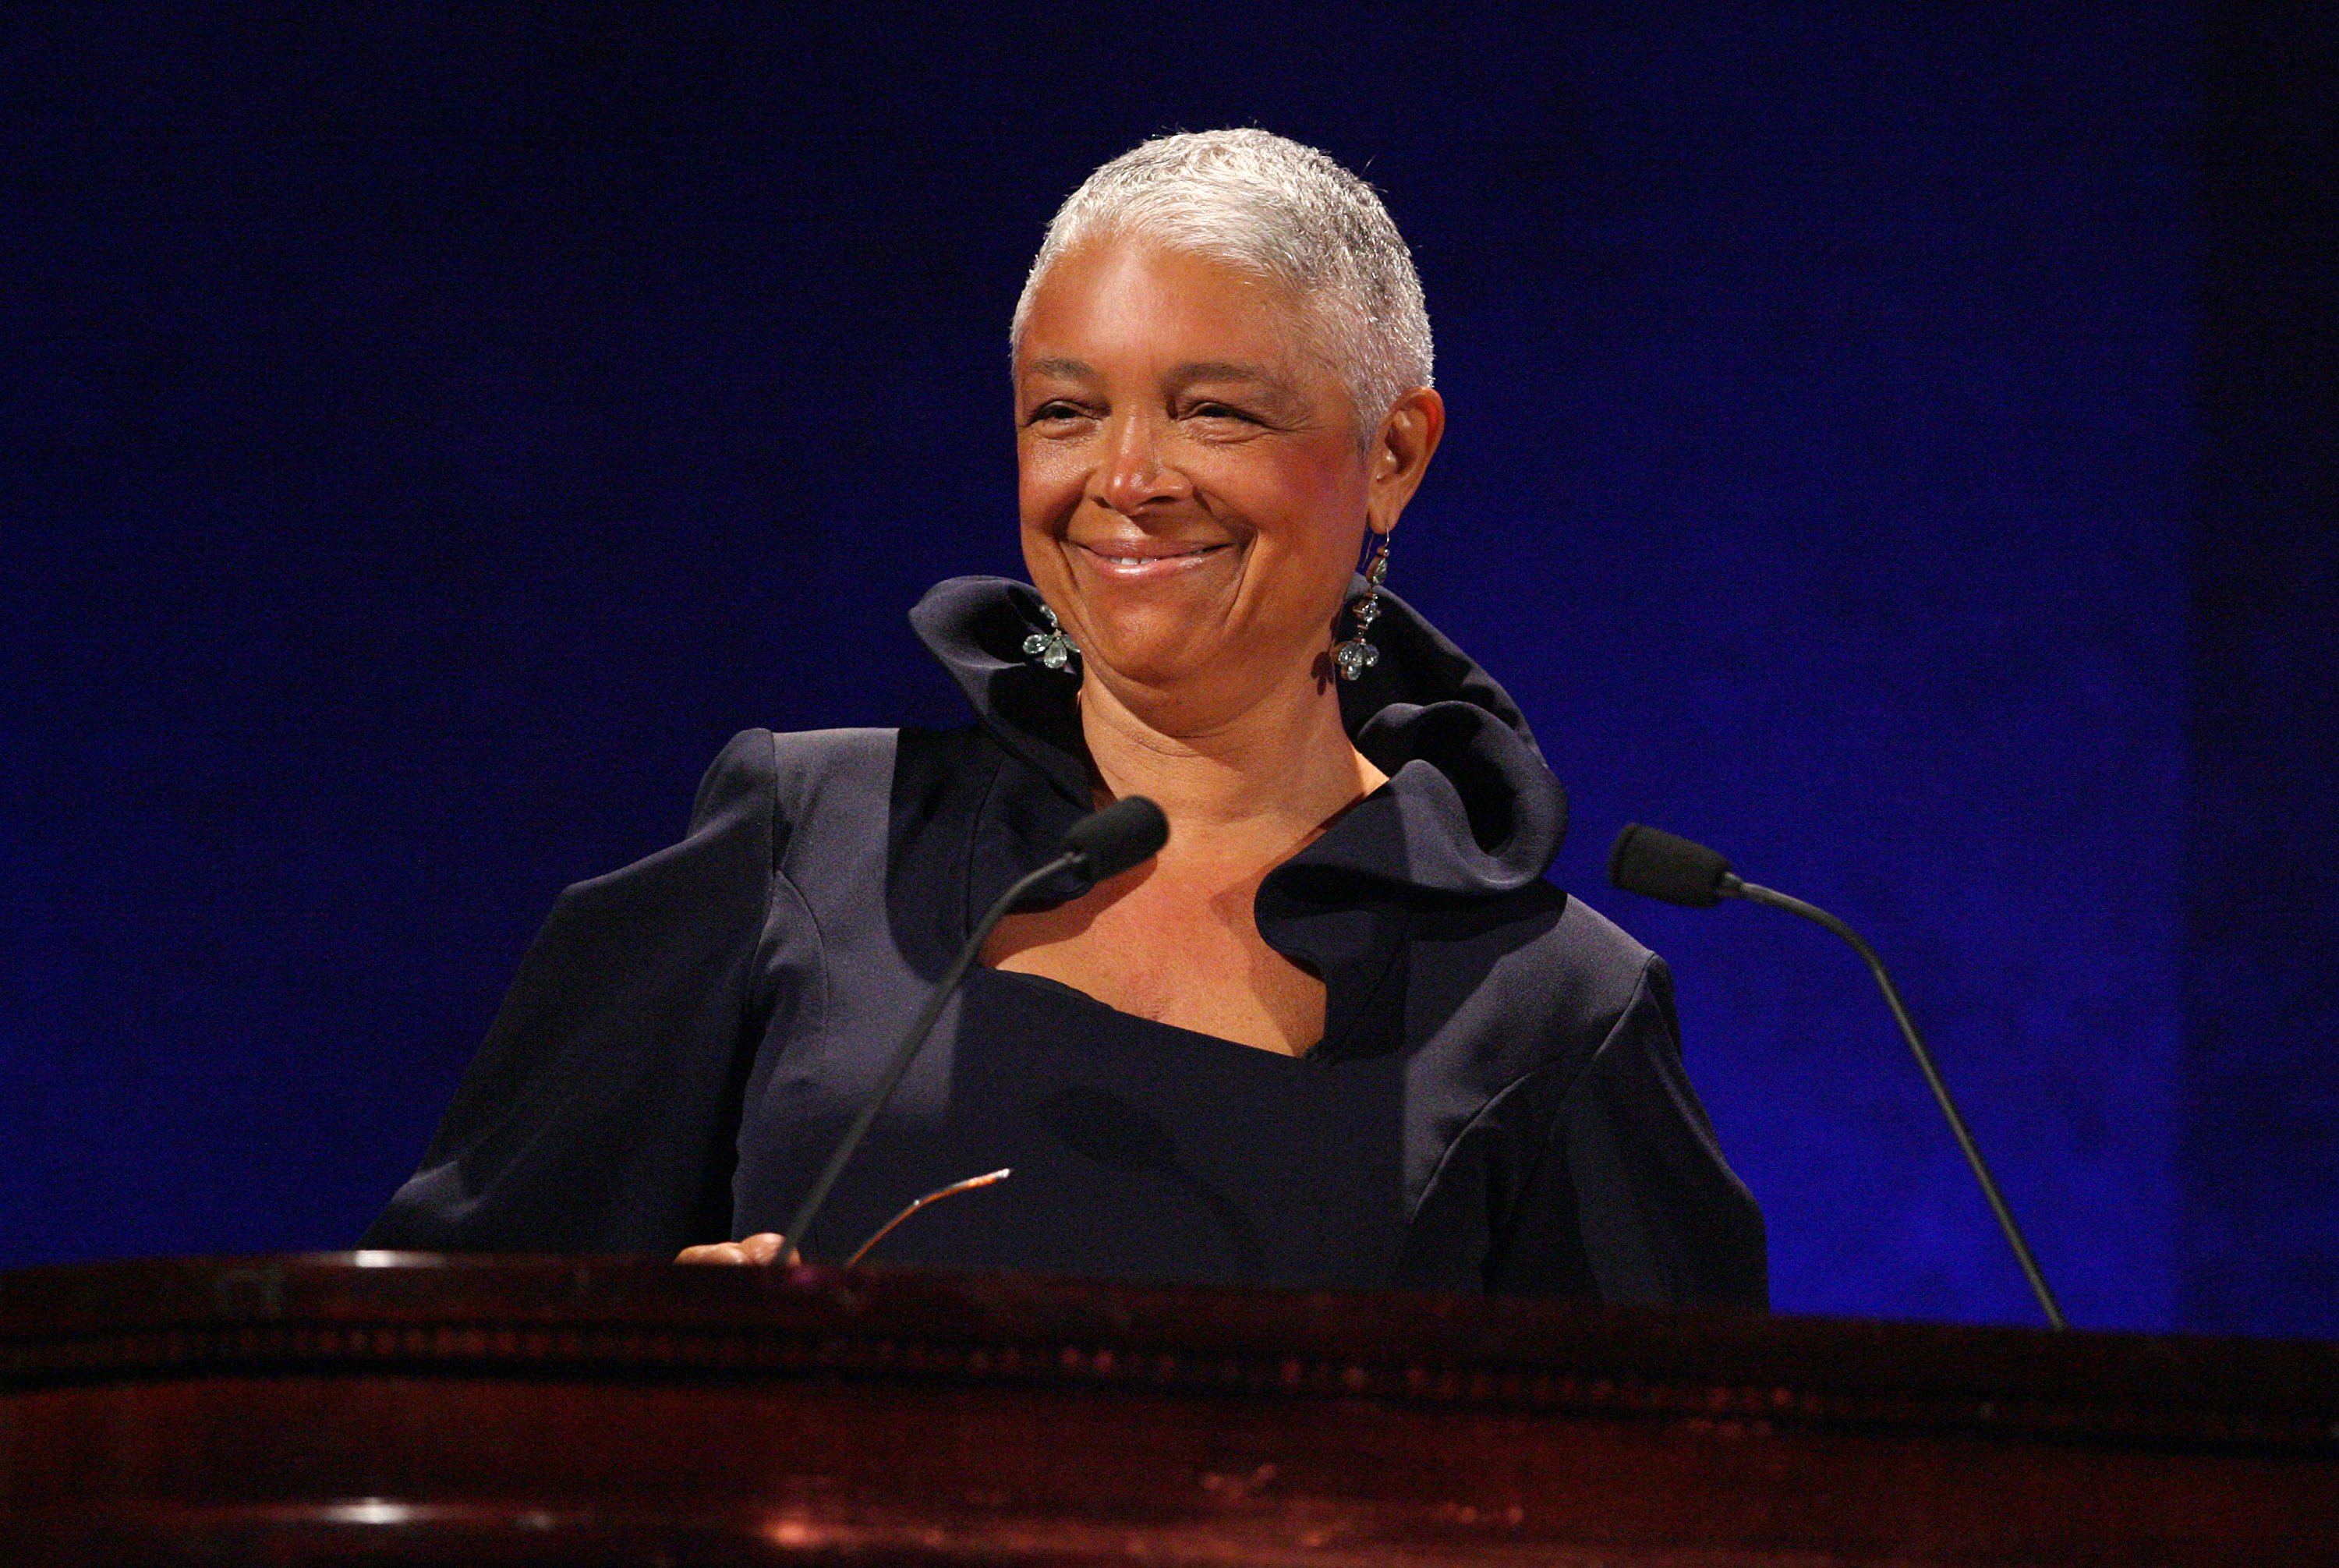 Camille Cosby prend la parole sur scène lors du 35e anniversaire de la Fondation Jackie Robinson, organisé par Bill Cosby, le 3 mars 2008 à New York. | Photo : Getty Images